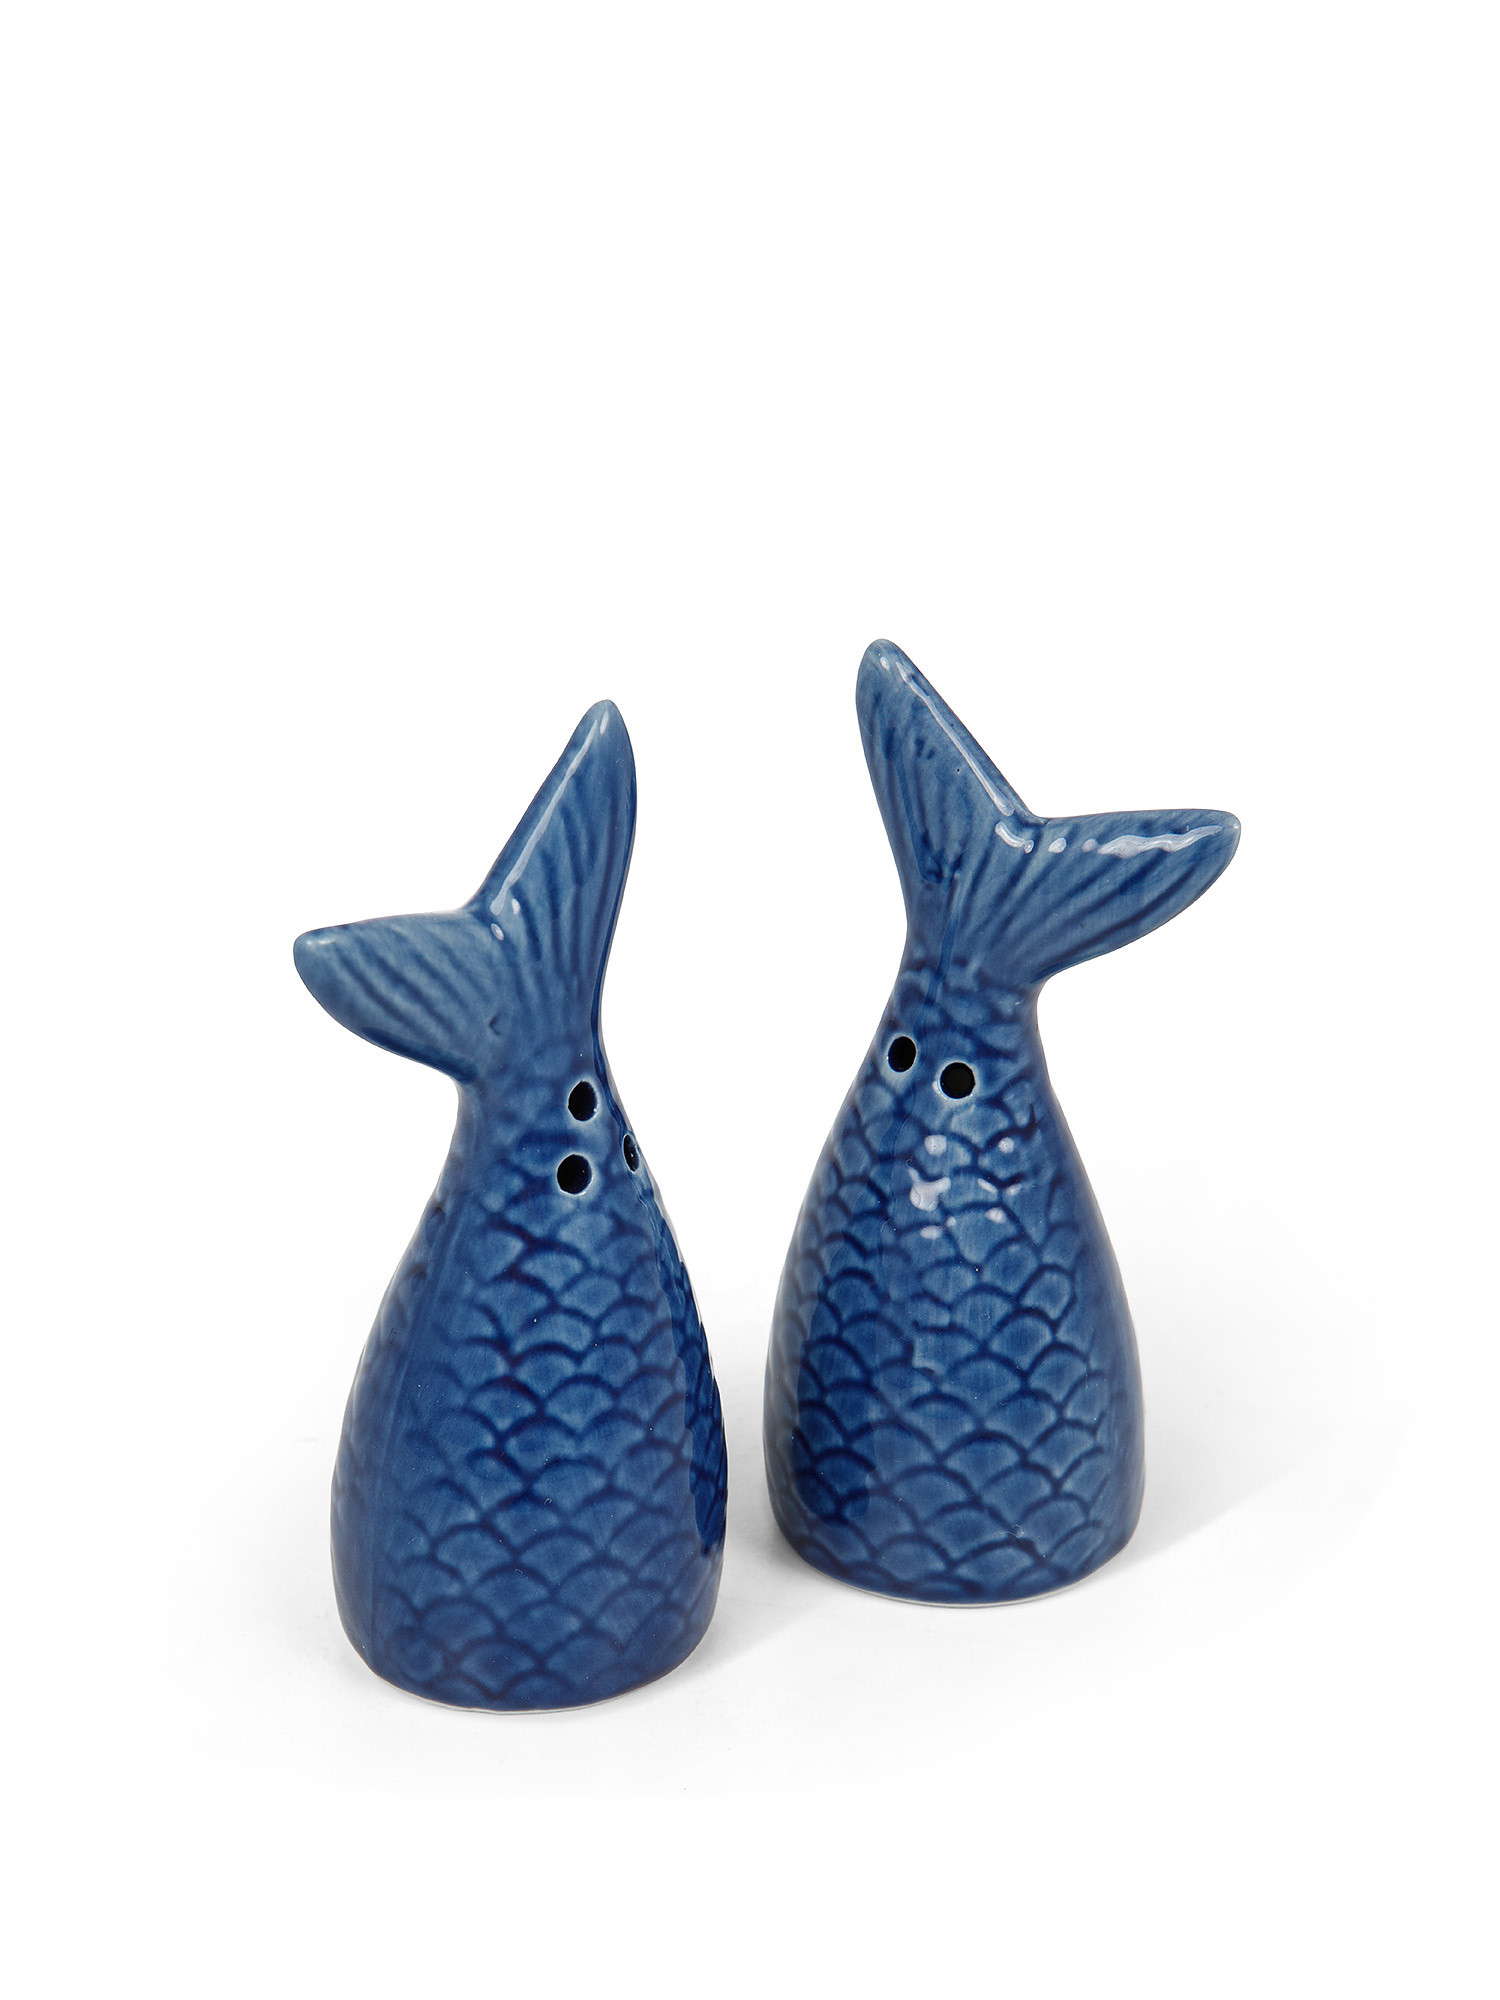 Porcelain mermaid tail salt and pepper set, Blue, large image number 1